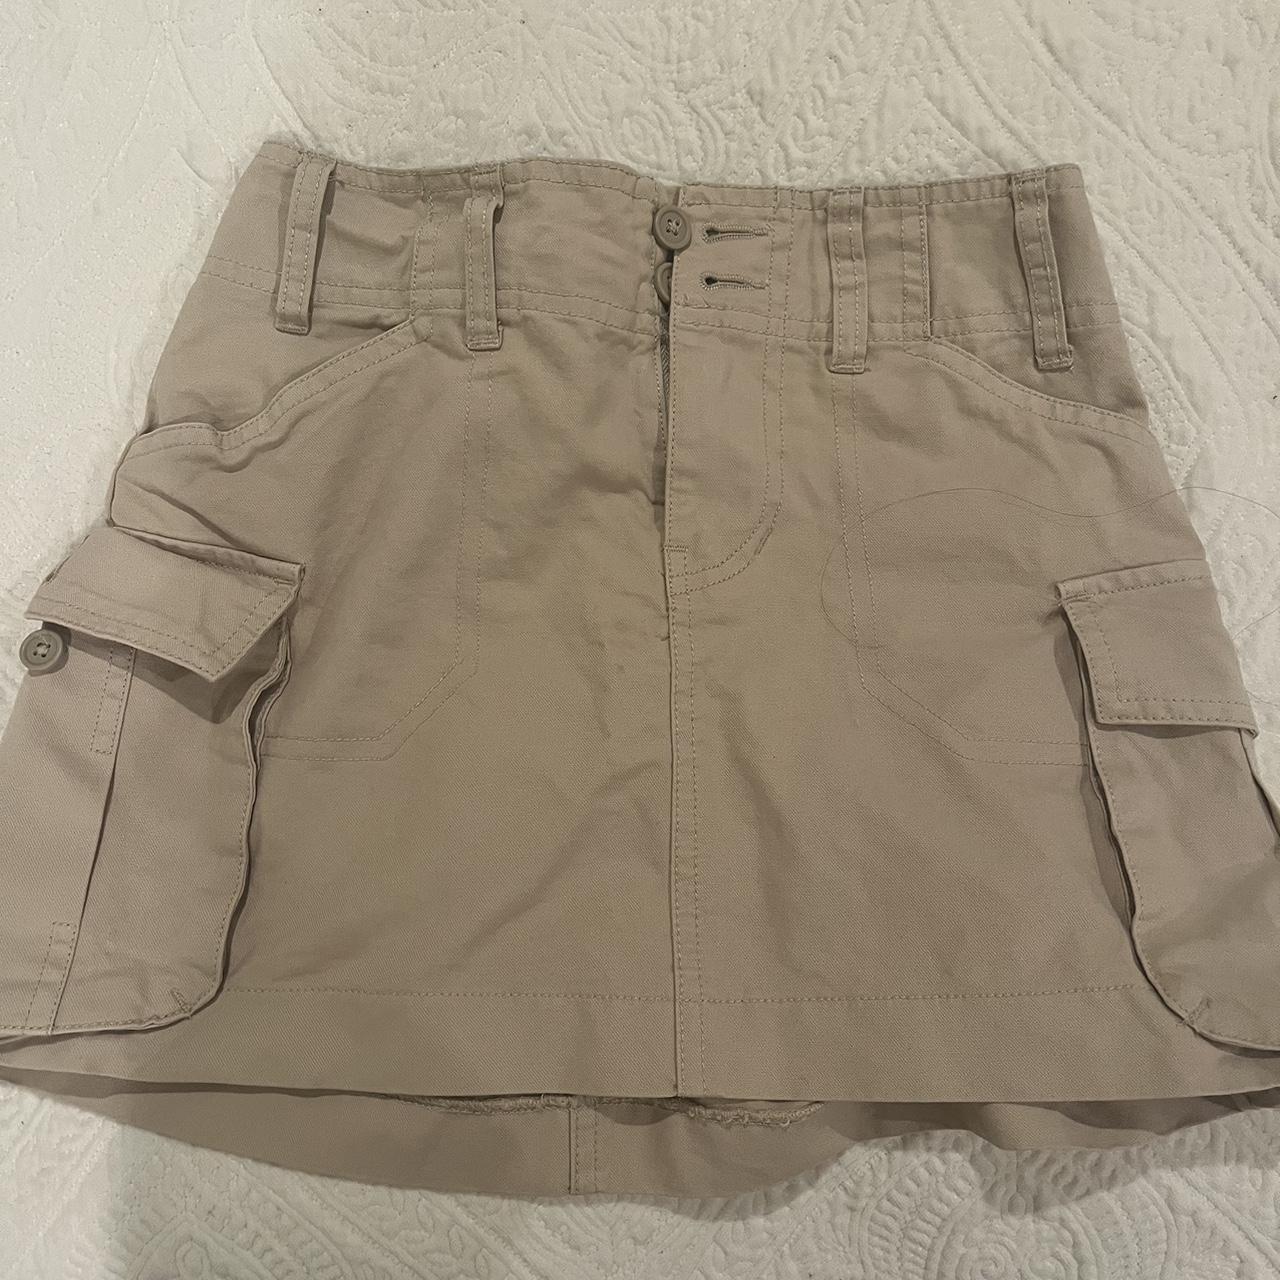 Brandy Melville cargo mini skirt - Depop